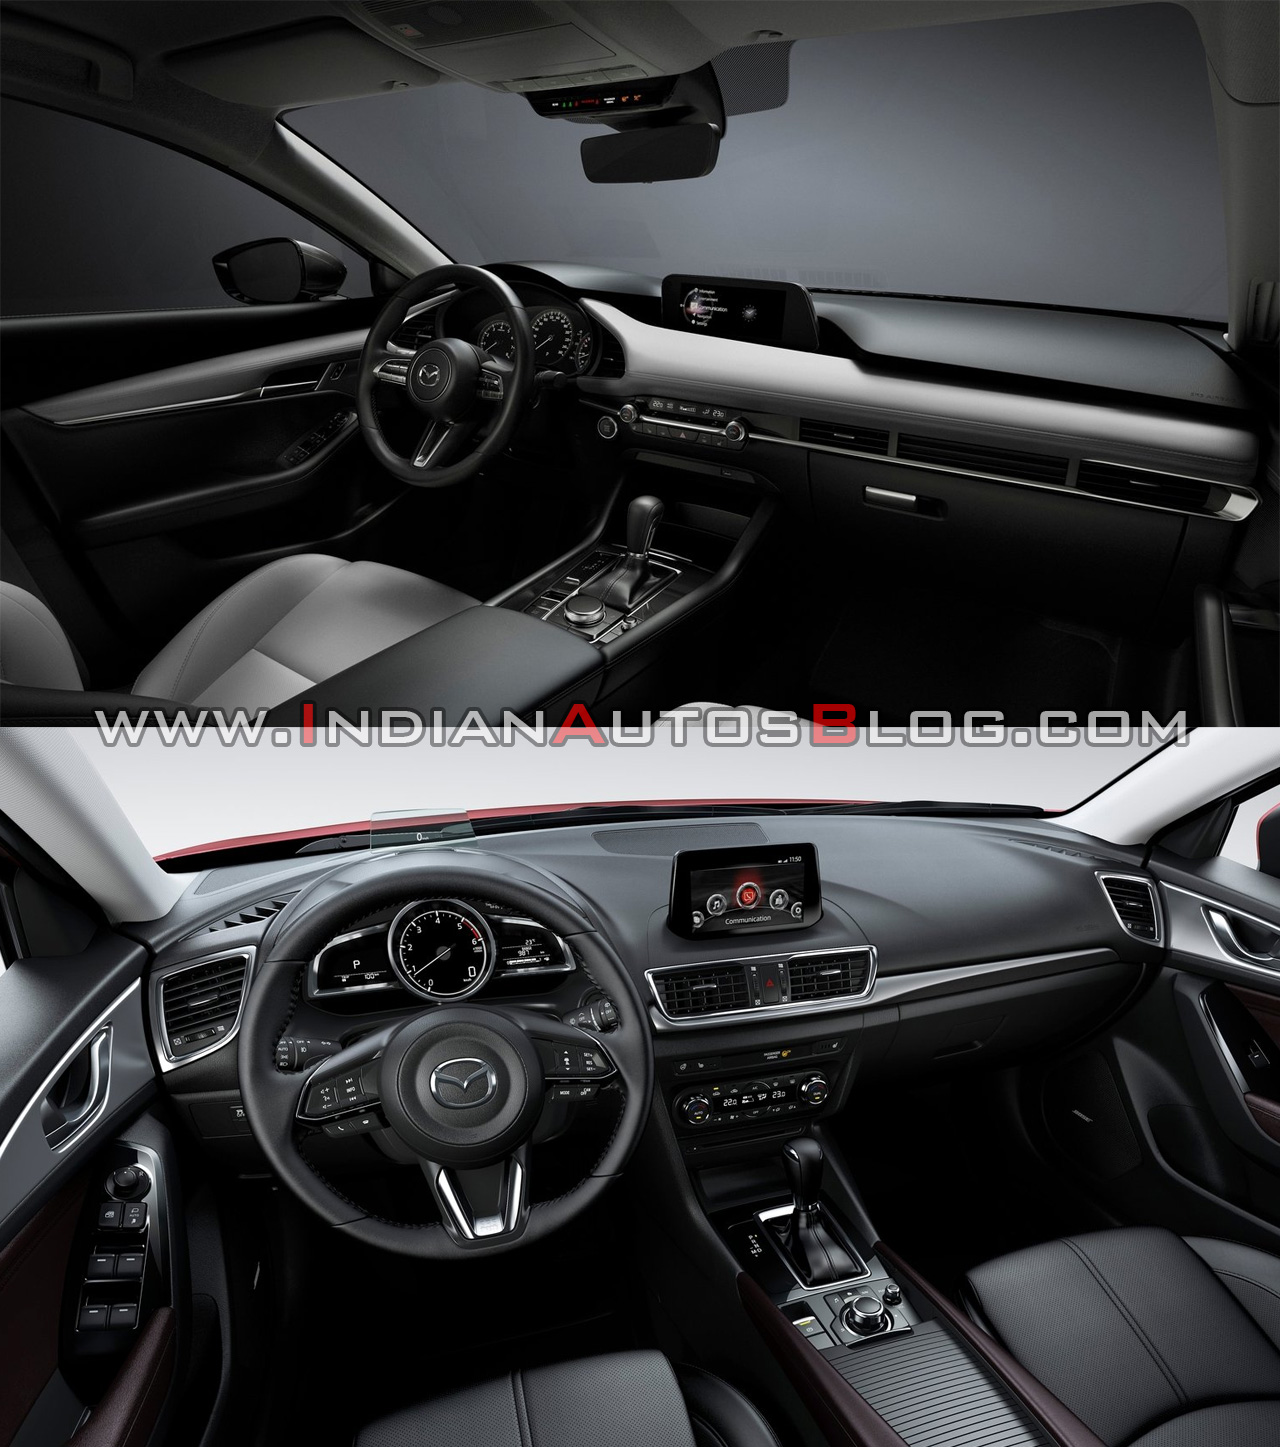 2019 Mazda3 Vs 2016 Mazda3 Interior